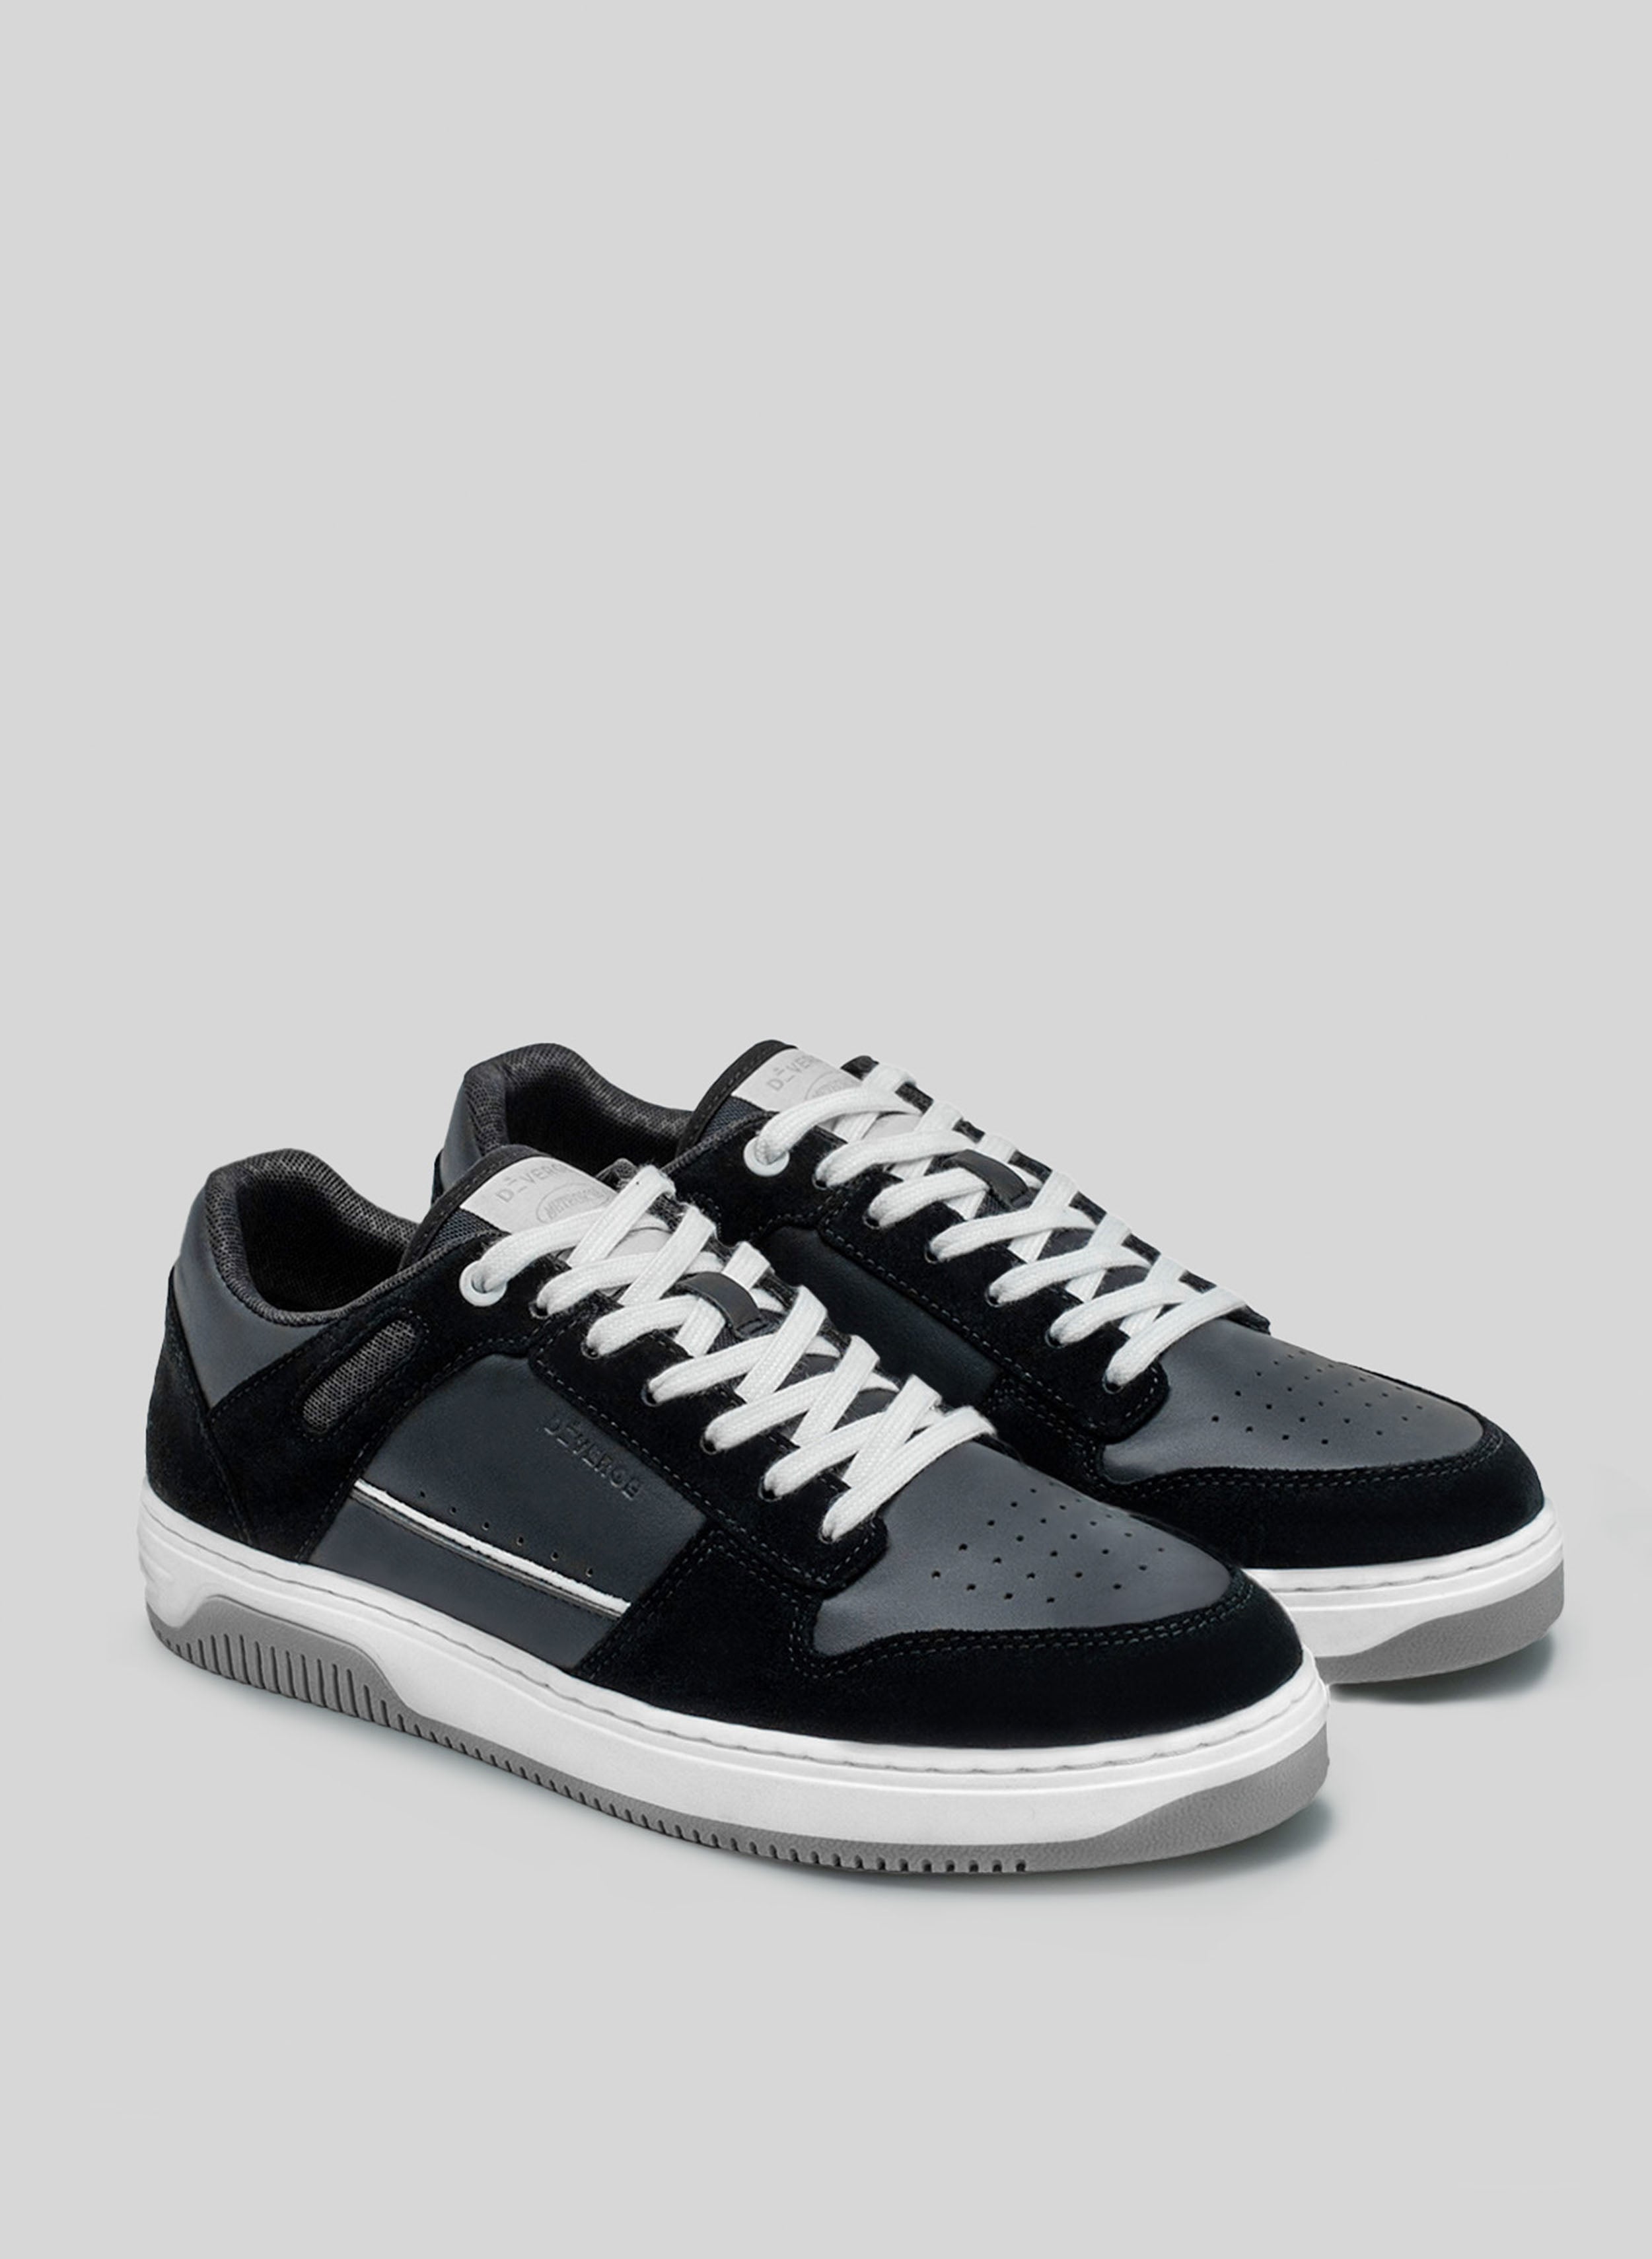 sneakers blanco y negro con suela gris de Diverge, promoviendo el impacto social y el calzado personalizado a través del proyecto imagine. 